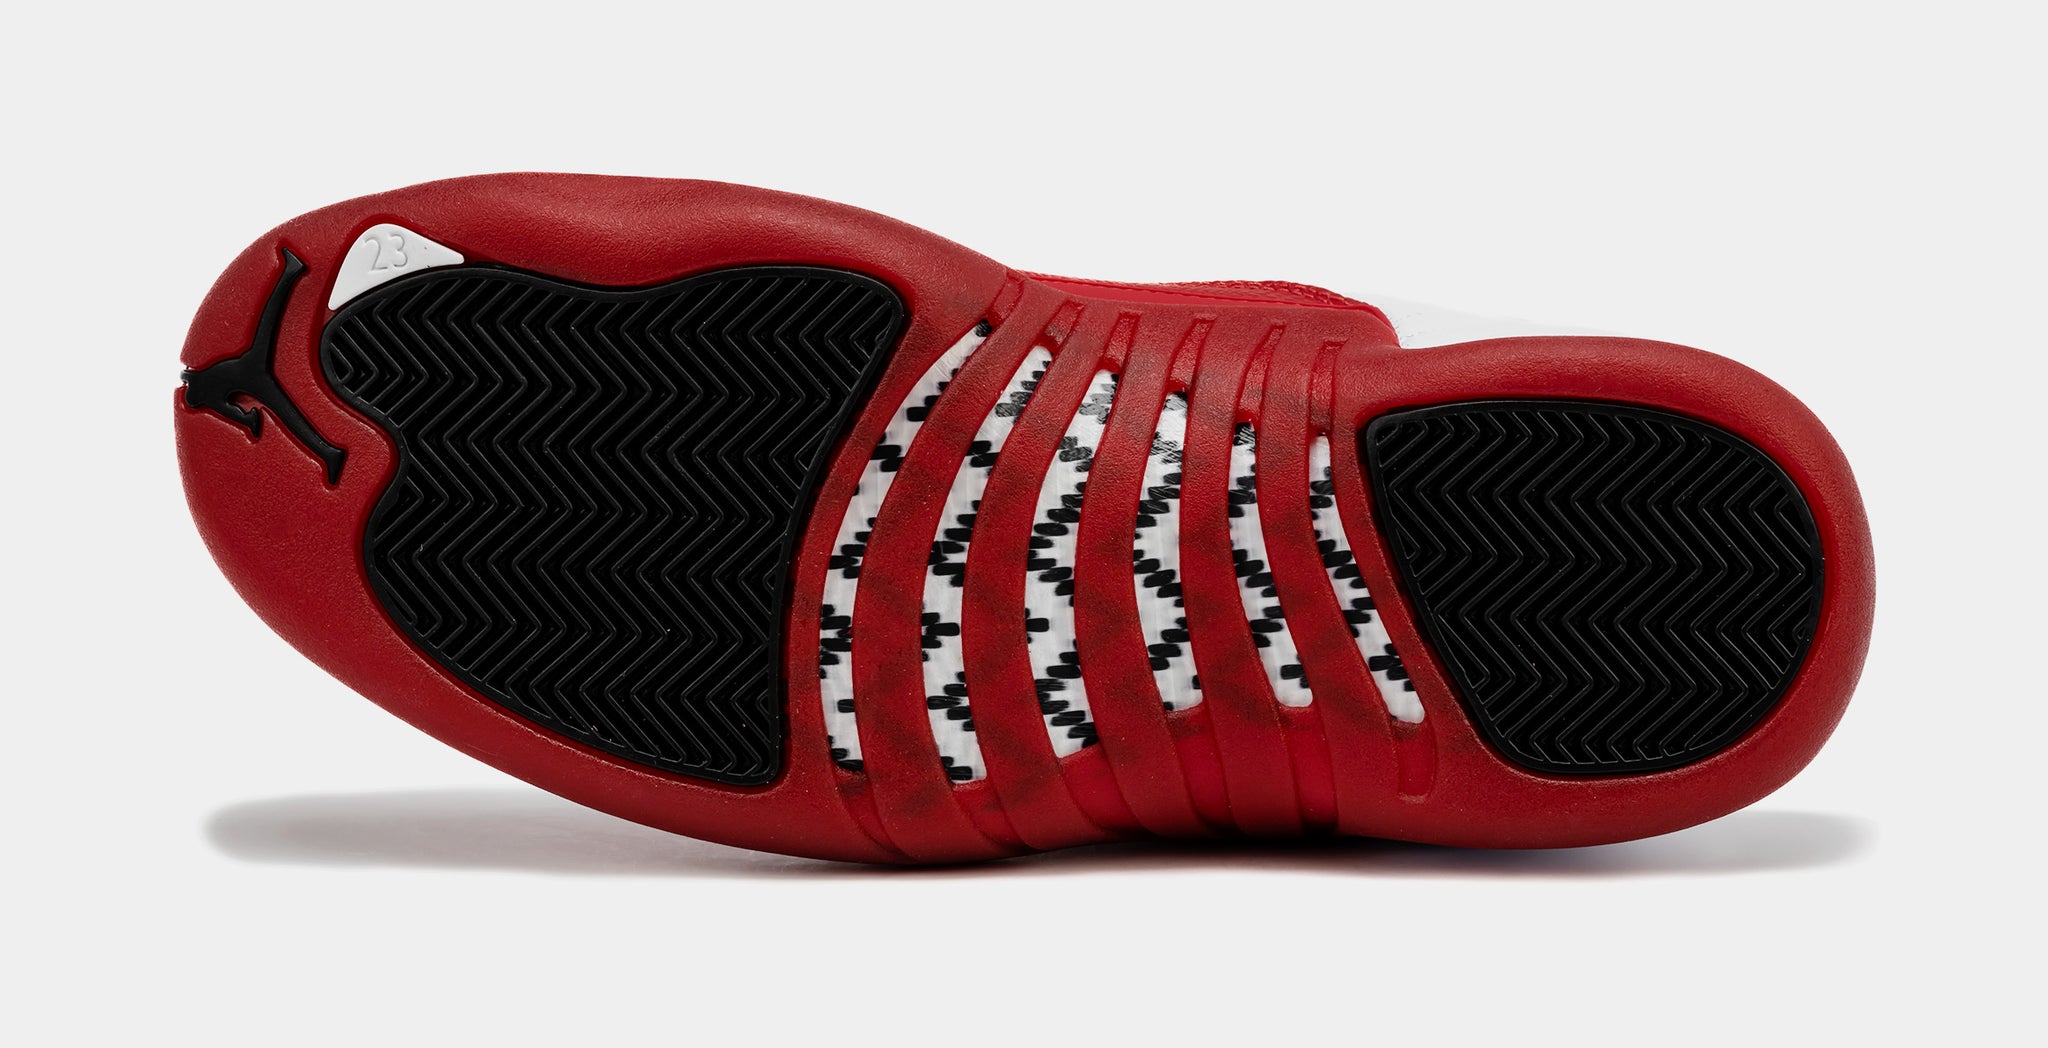 Nike Air Jordan 23 OG White Varsity Red | Size 14, Sneaker in White/Gold/Red